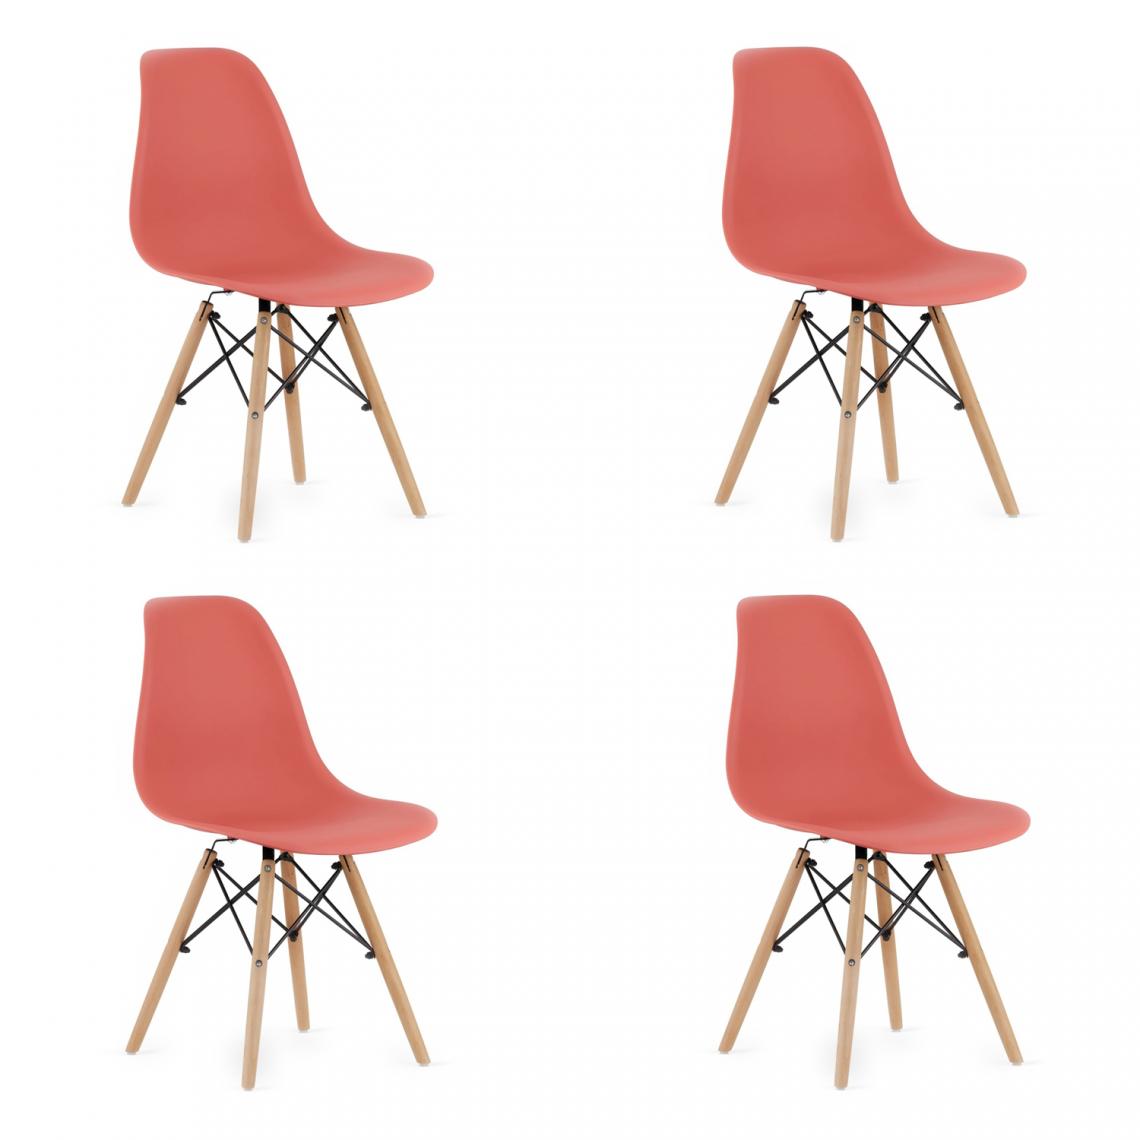 Hucoco - OSATA - Lot de 4 chaises en PP style moderne salon/cuisine - 81x54x46 cm - Chaises de salle à manger - Rouge - Chaises